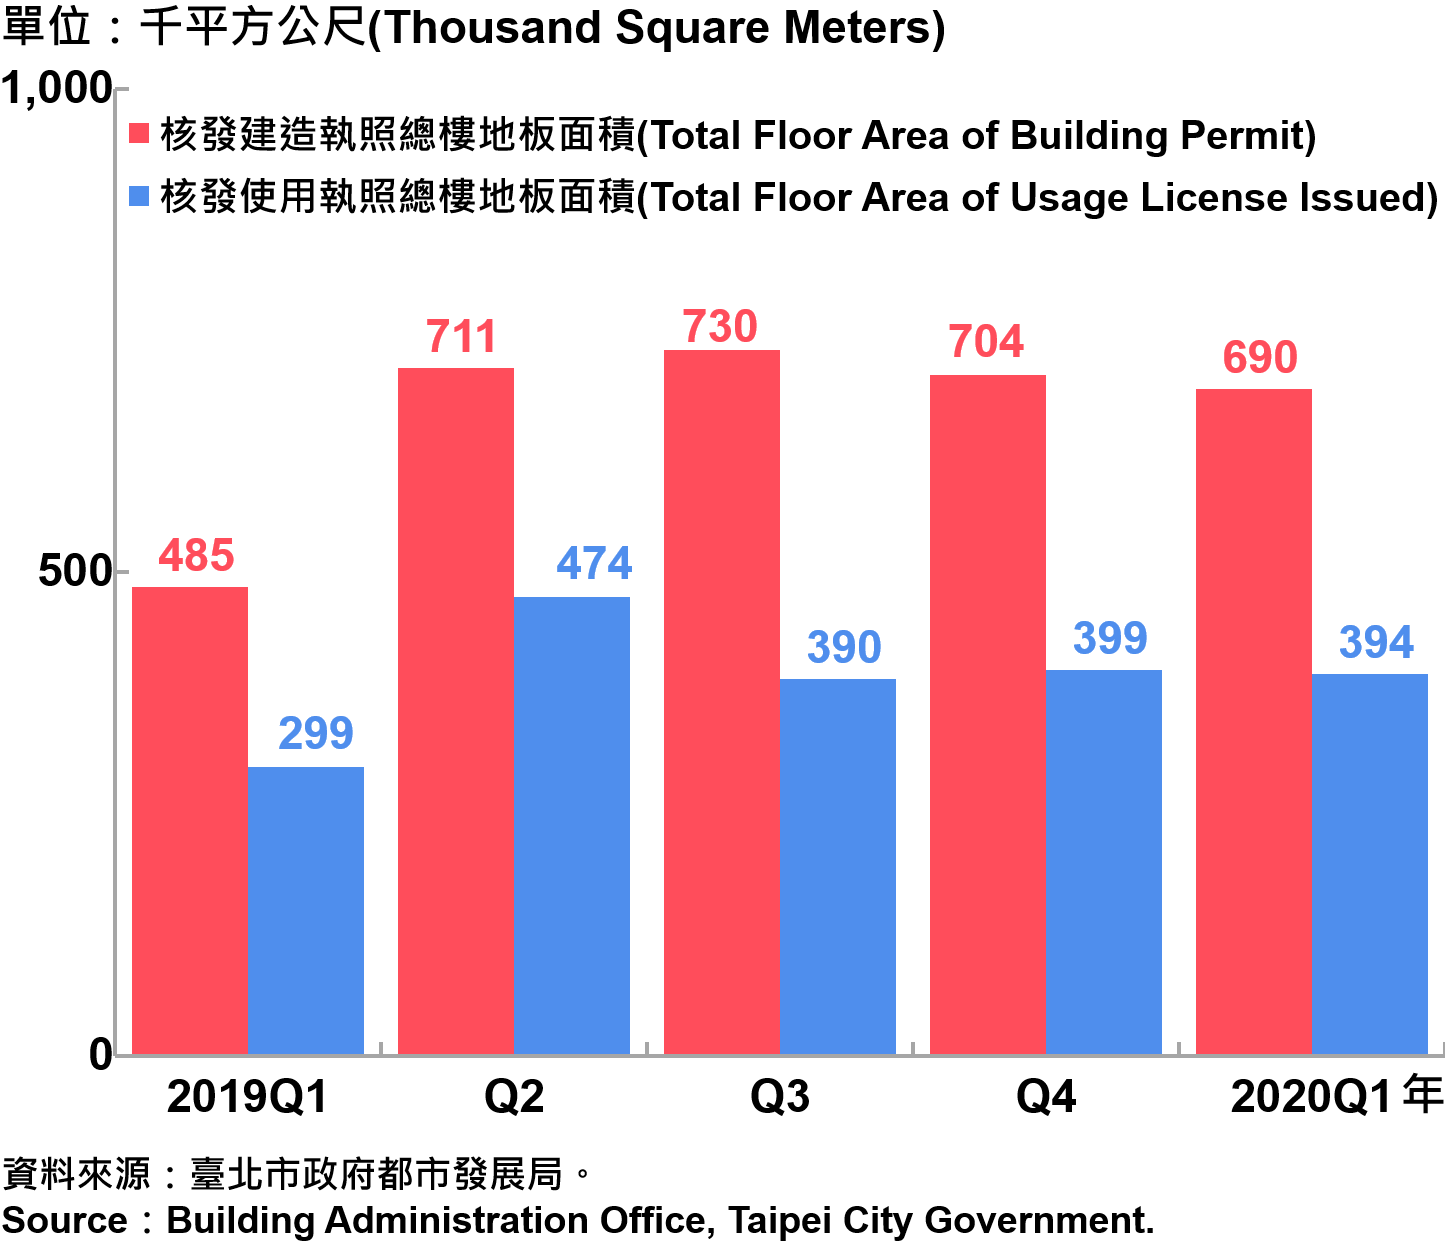 臺北市核發建築物執照與使用執照總樓地板面積—2020Q1 Building with Newly Construction and Using Construction Permits Issued in Taipei City—2020Q1